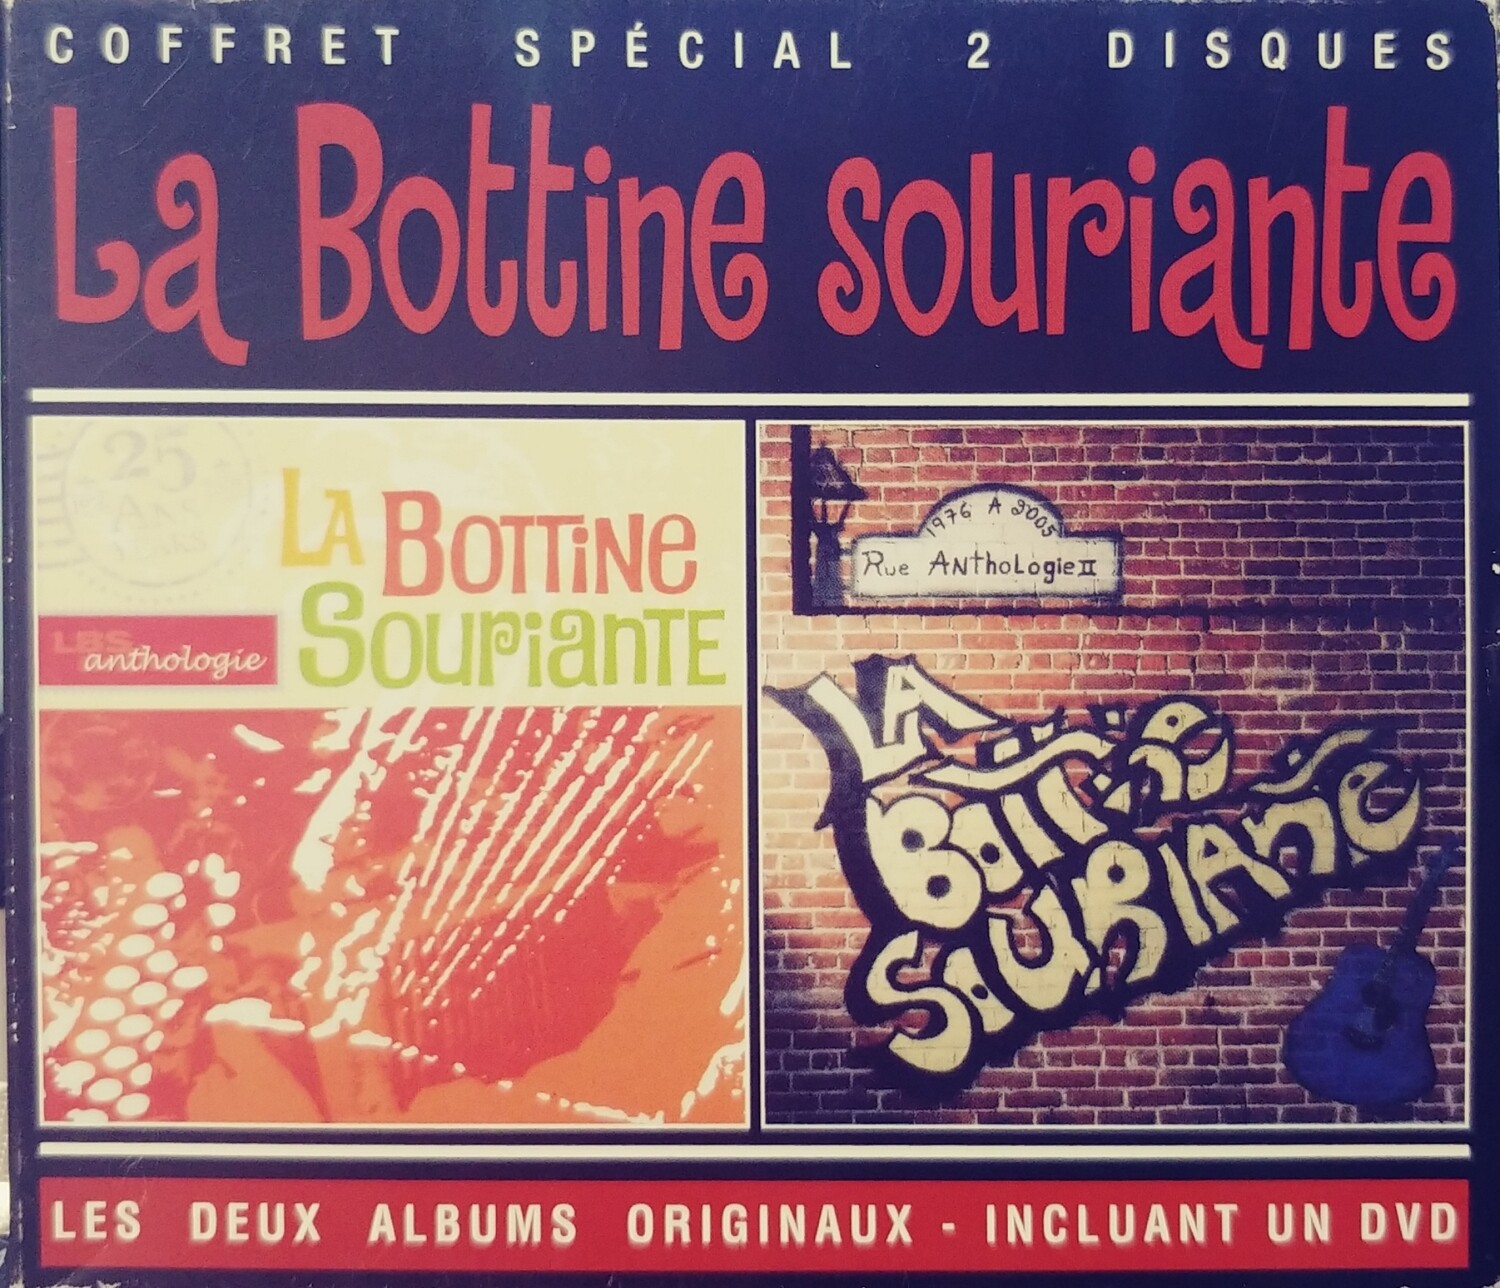 La Bottine Souriante - Collection 2 pour 1 / Anthologie vol. 1 & 2 (CD)